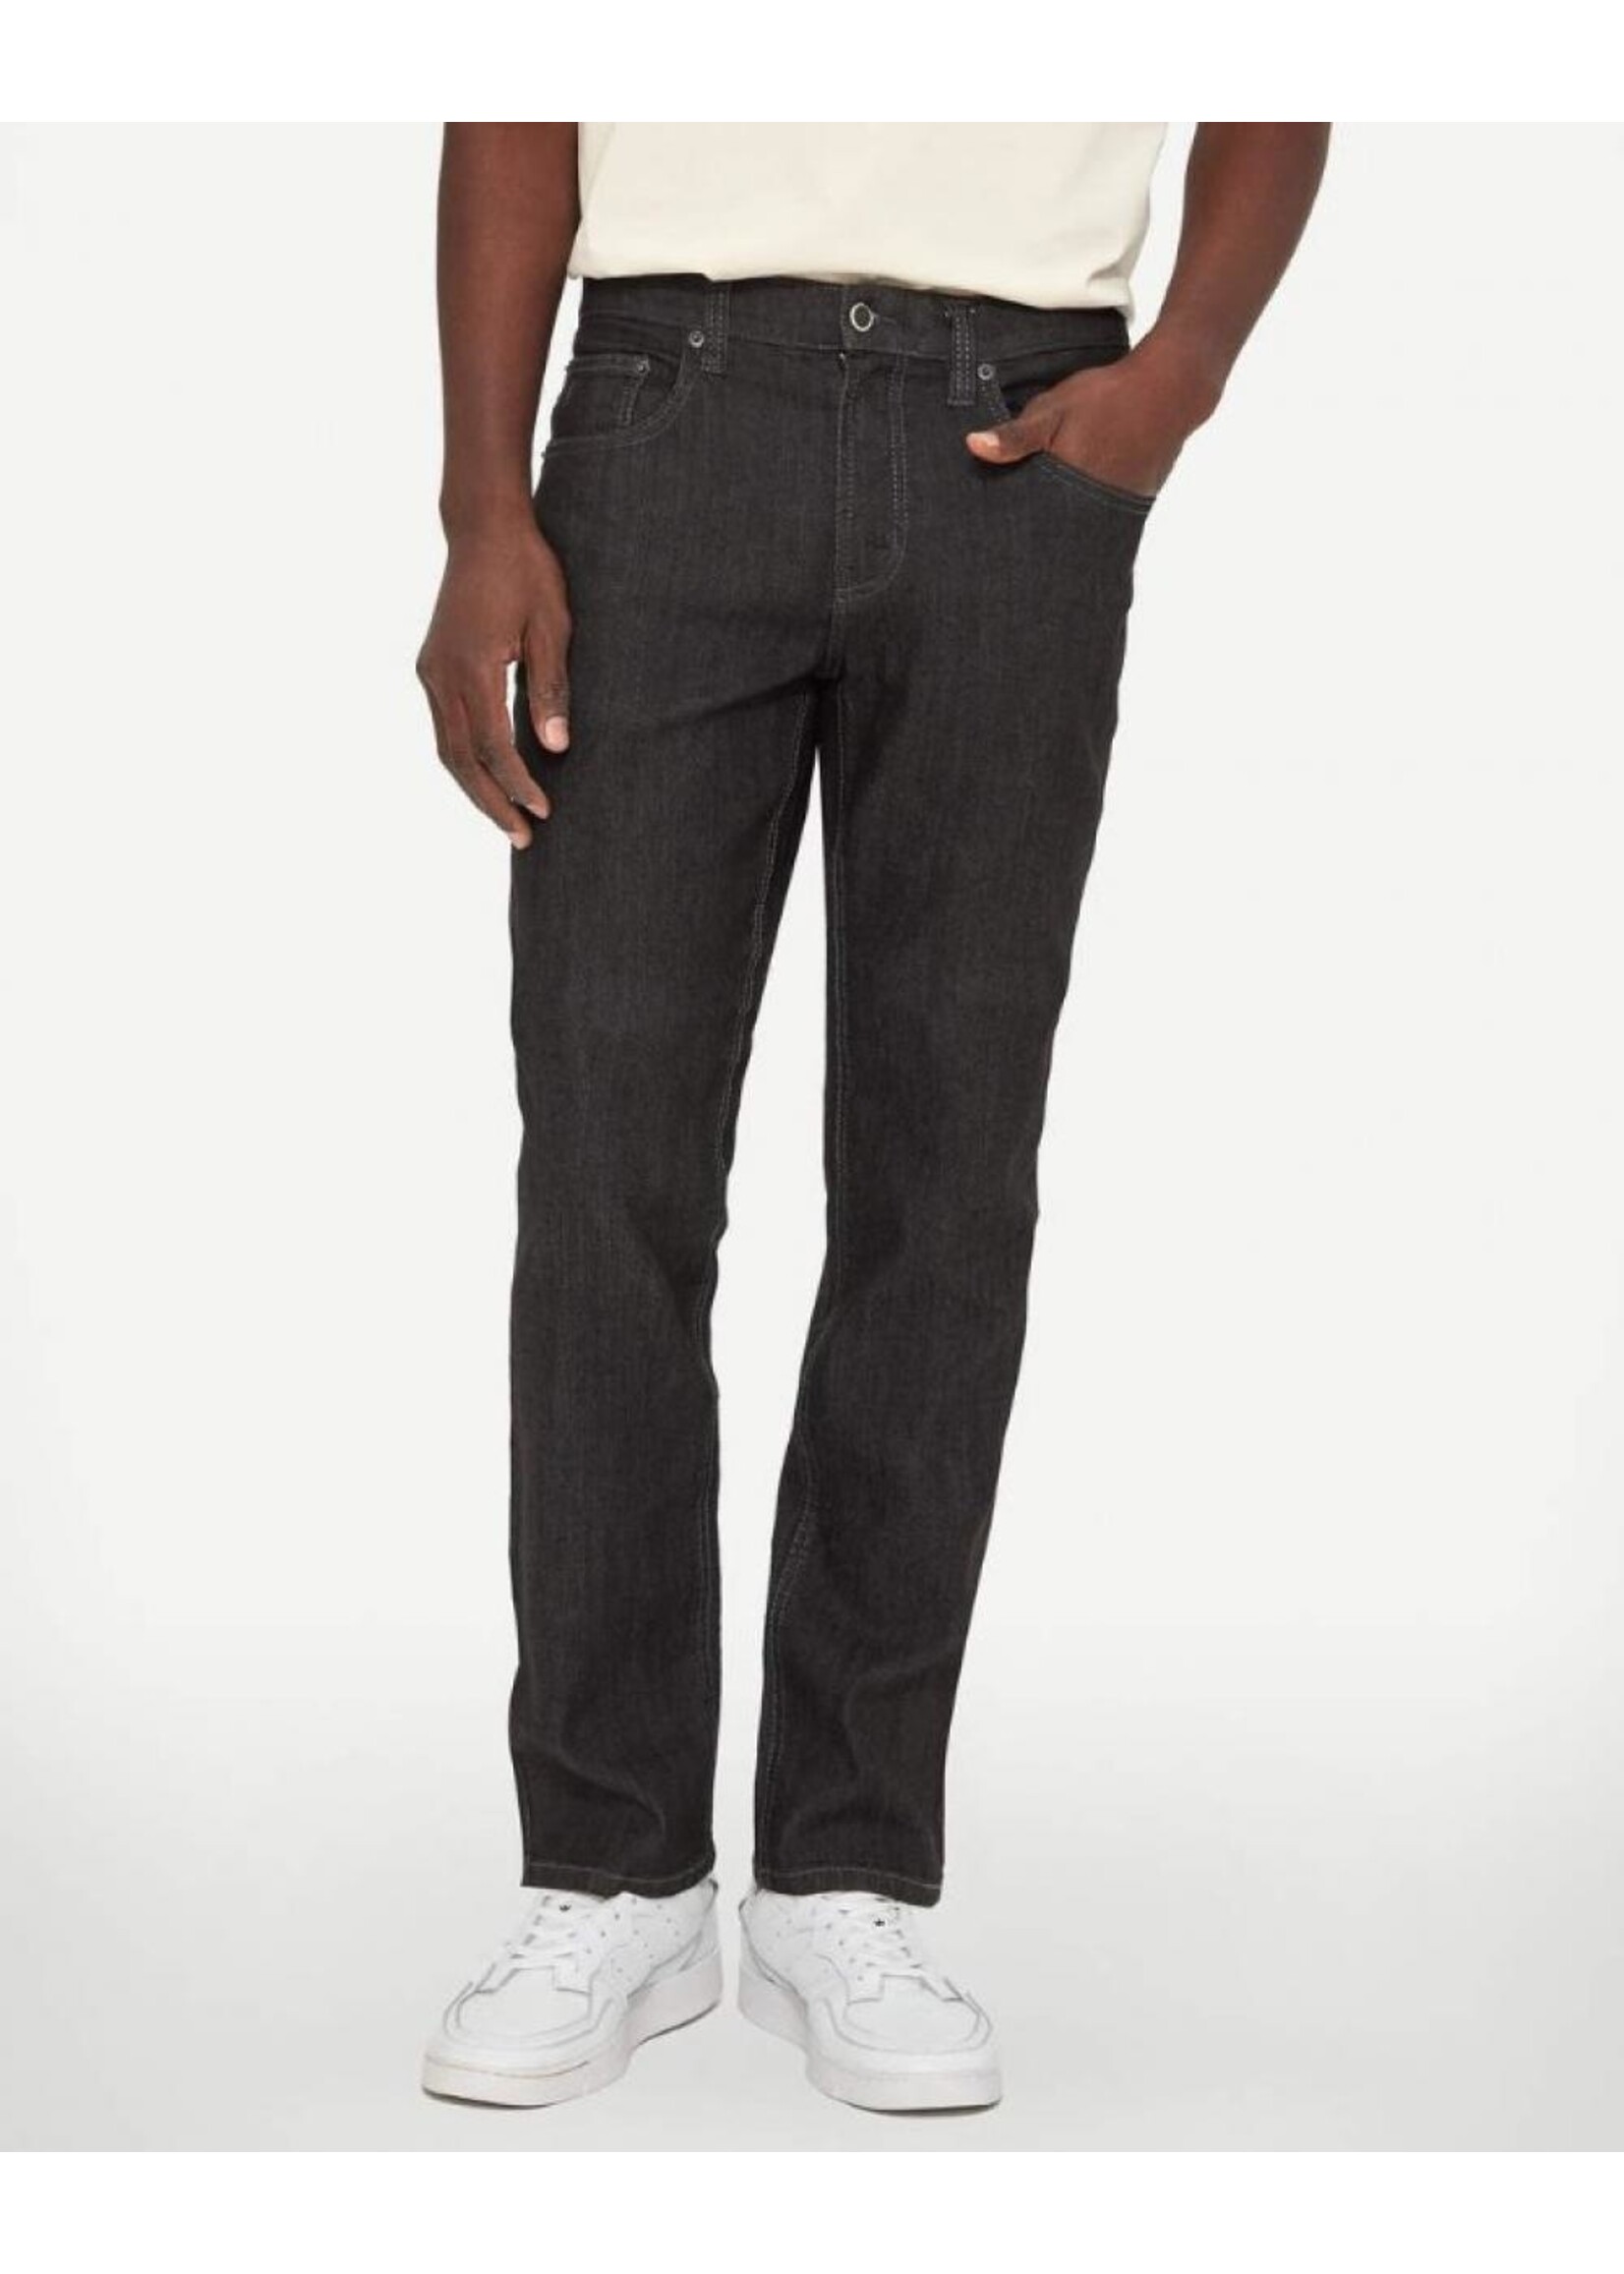 LOIS JEANS & JACKETS Pantalon Jeans coupe régulière Brad-Homme